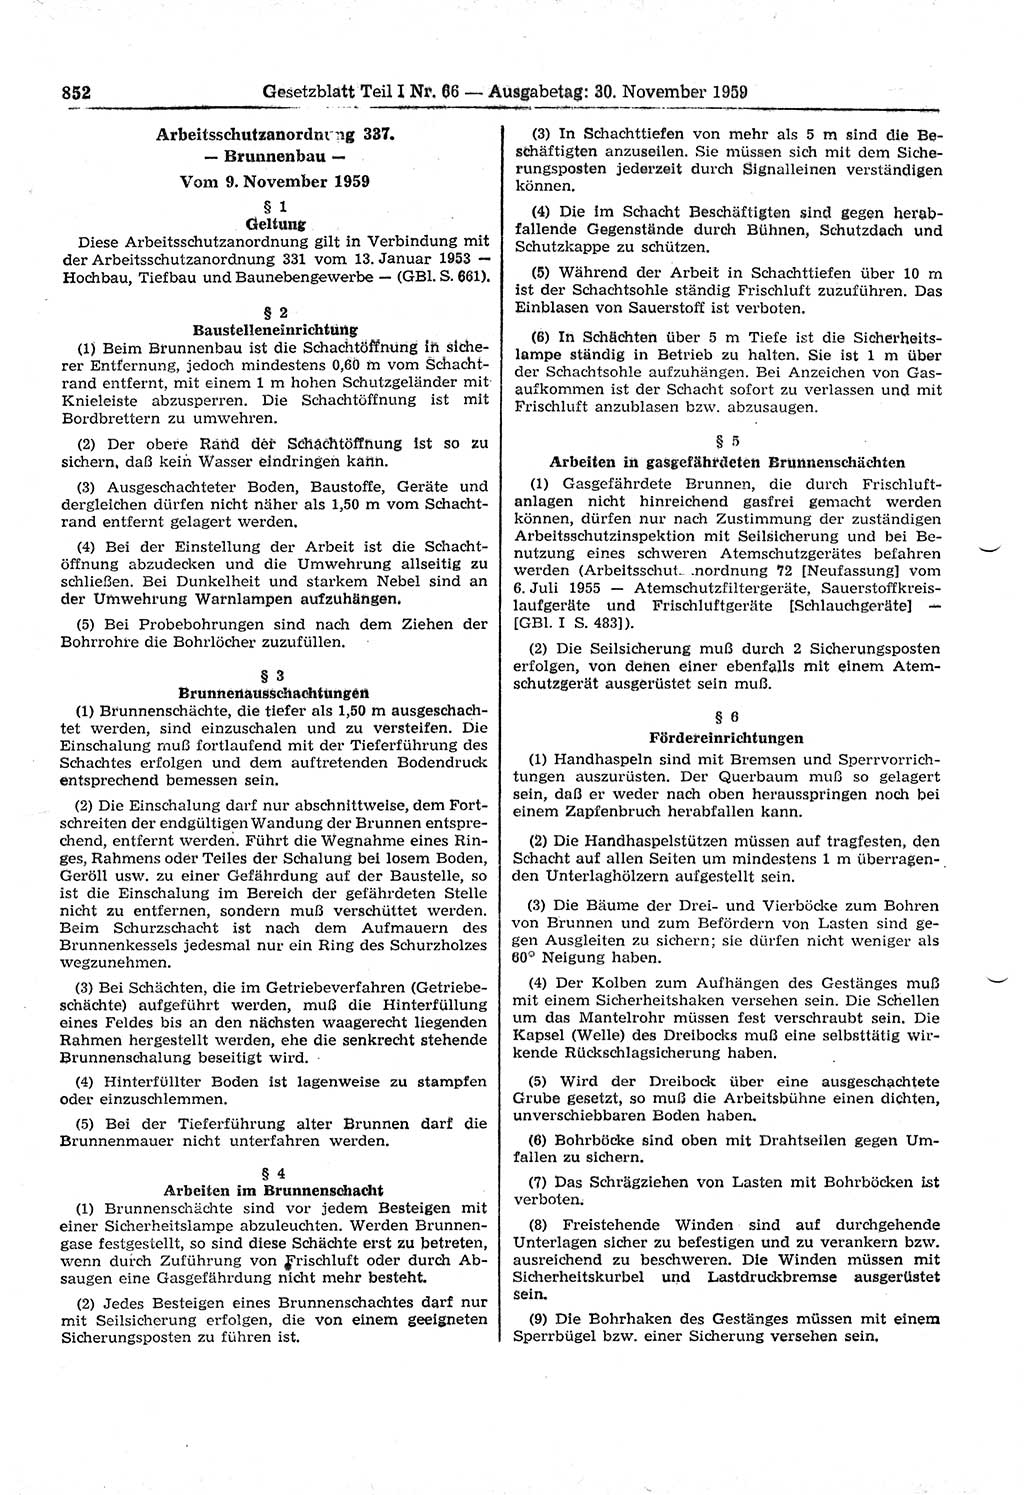 Gesetzblatt (GBl.) der Deutschen Demokratischen Republik (DDR) Teil Ⅰ 1959, Seite 852 (GBl. DDR Ⅰ 1959, S. 852)